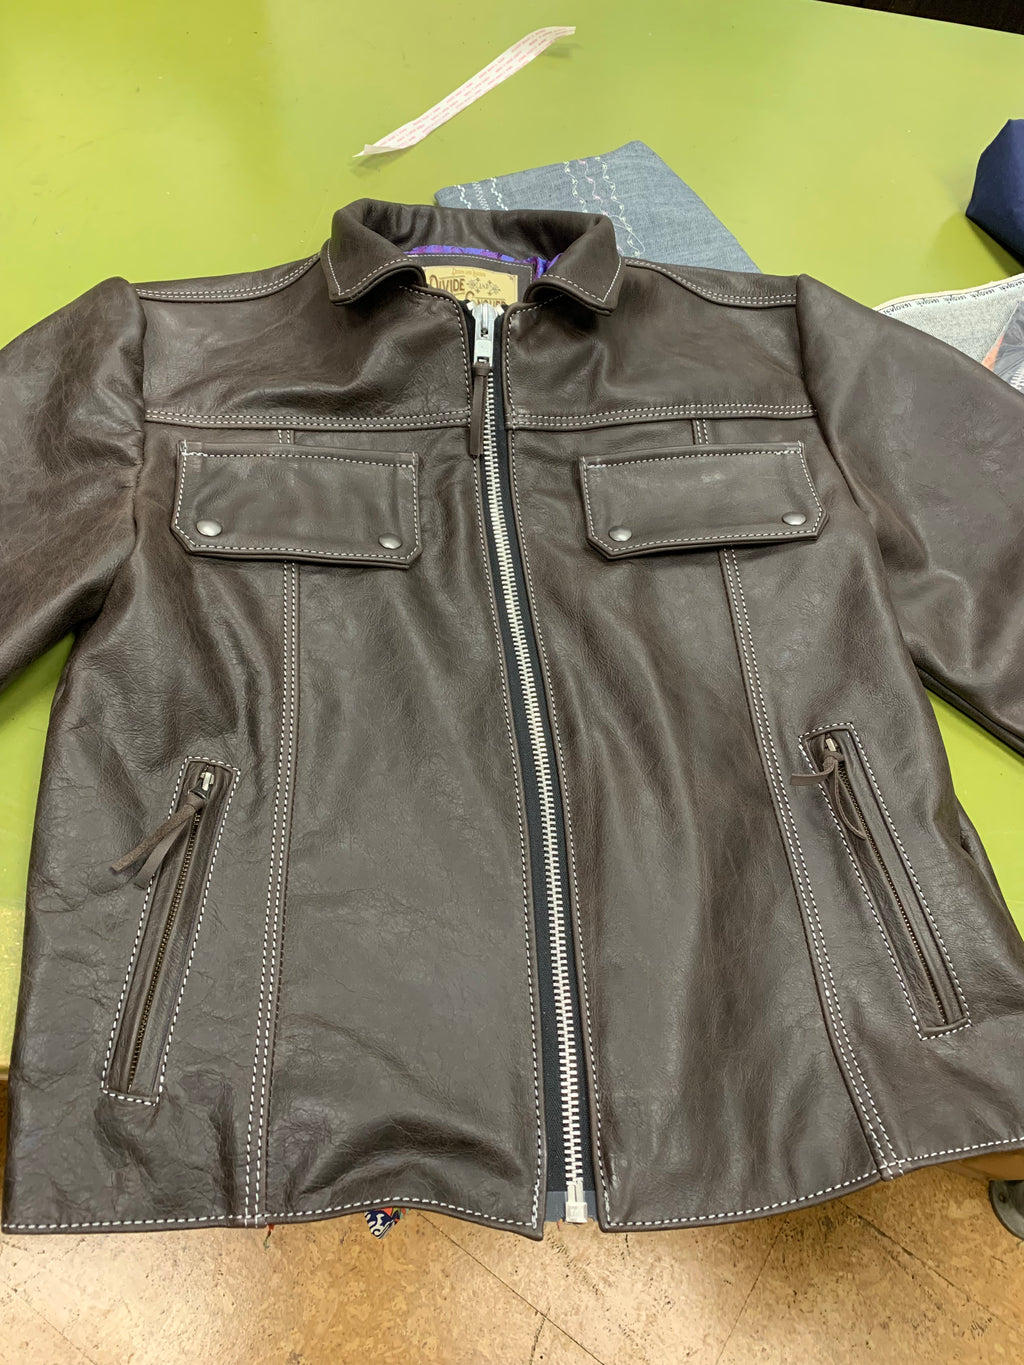 The everyday cruiser leather jacket